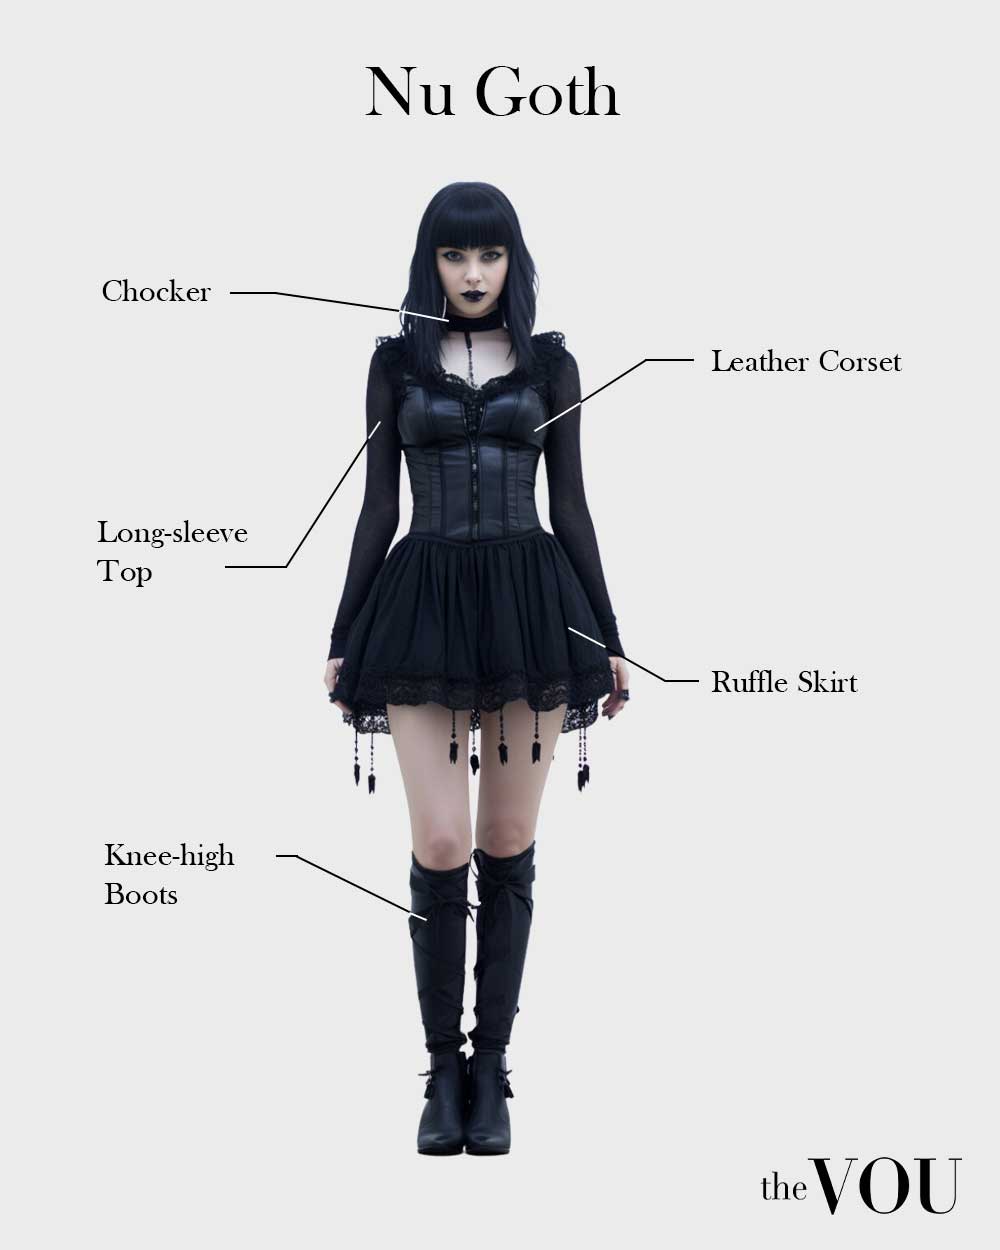 Female Nu Goth fashion style